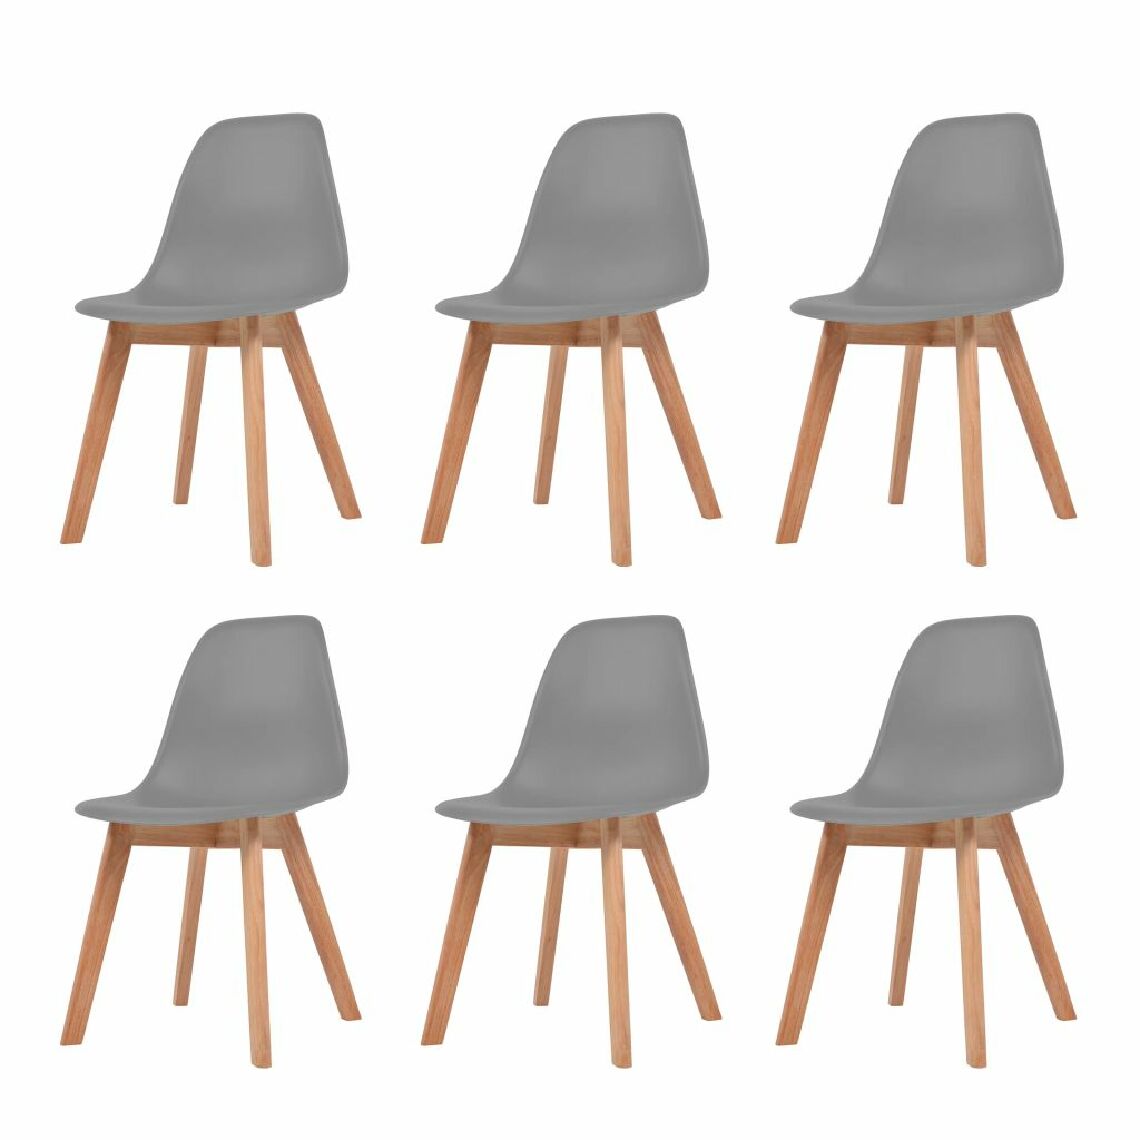 Chunhelife - Chunhelife Chaises de salle à manger 6 pcs Gris Plastique - Chaises